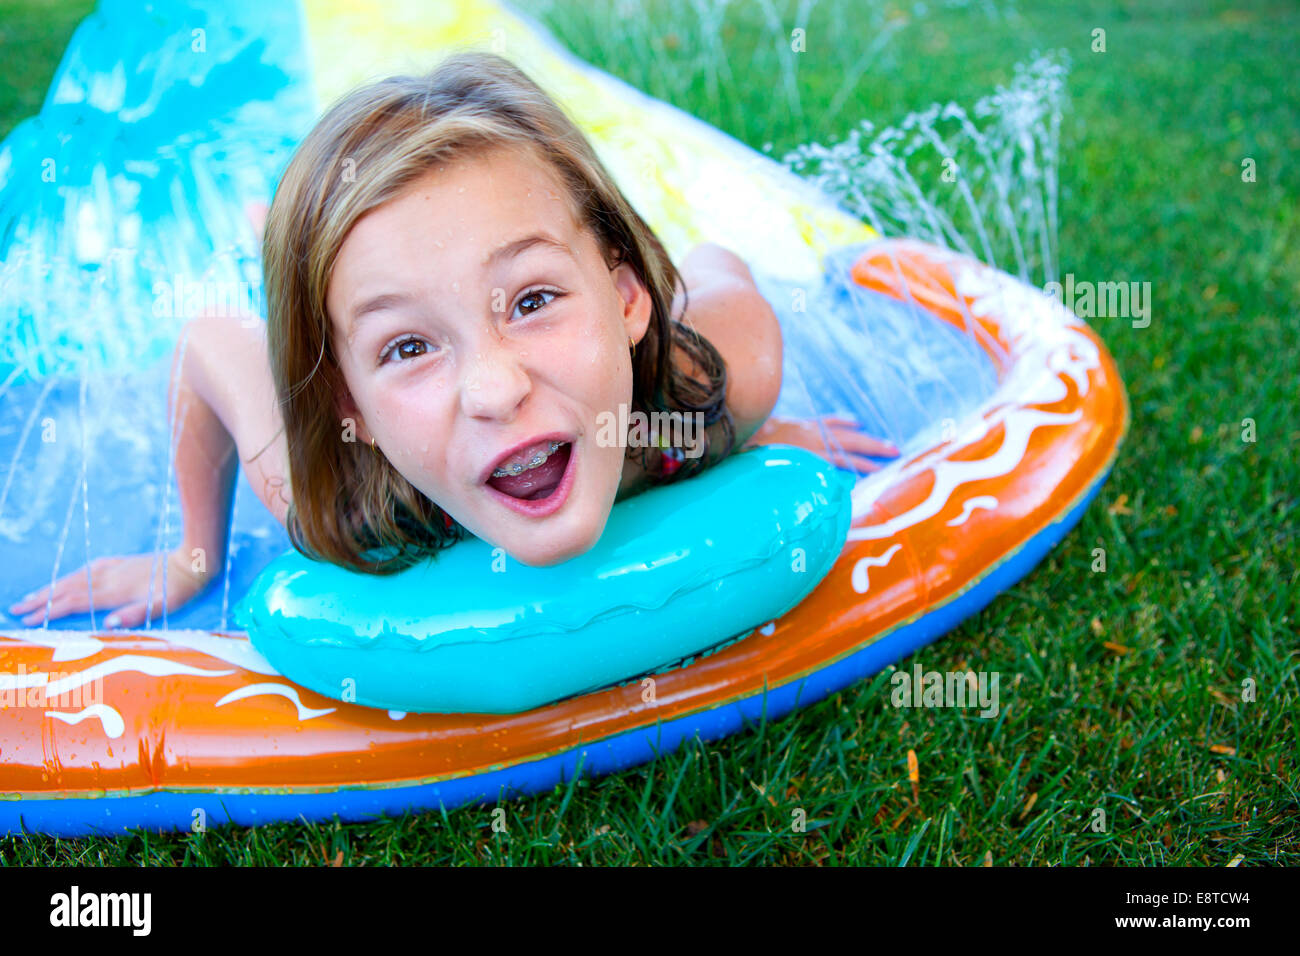 Caucasian girl smiling on water slide Stock Photo